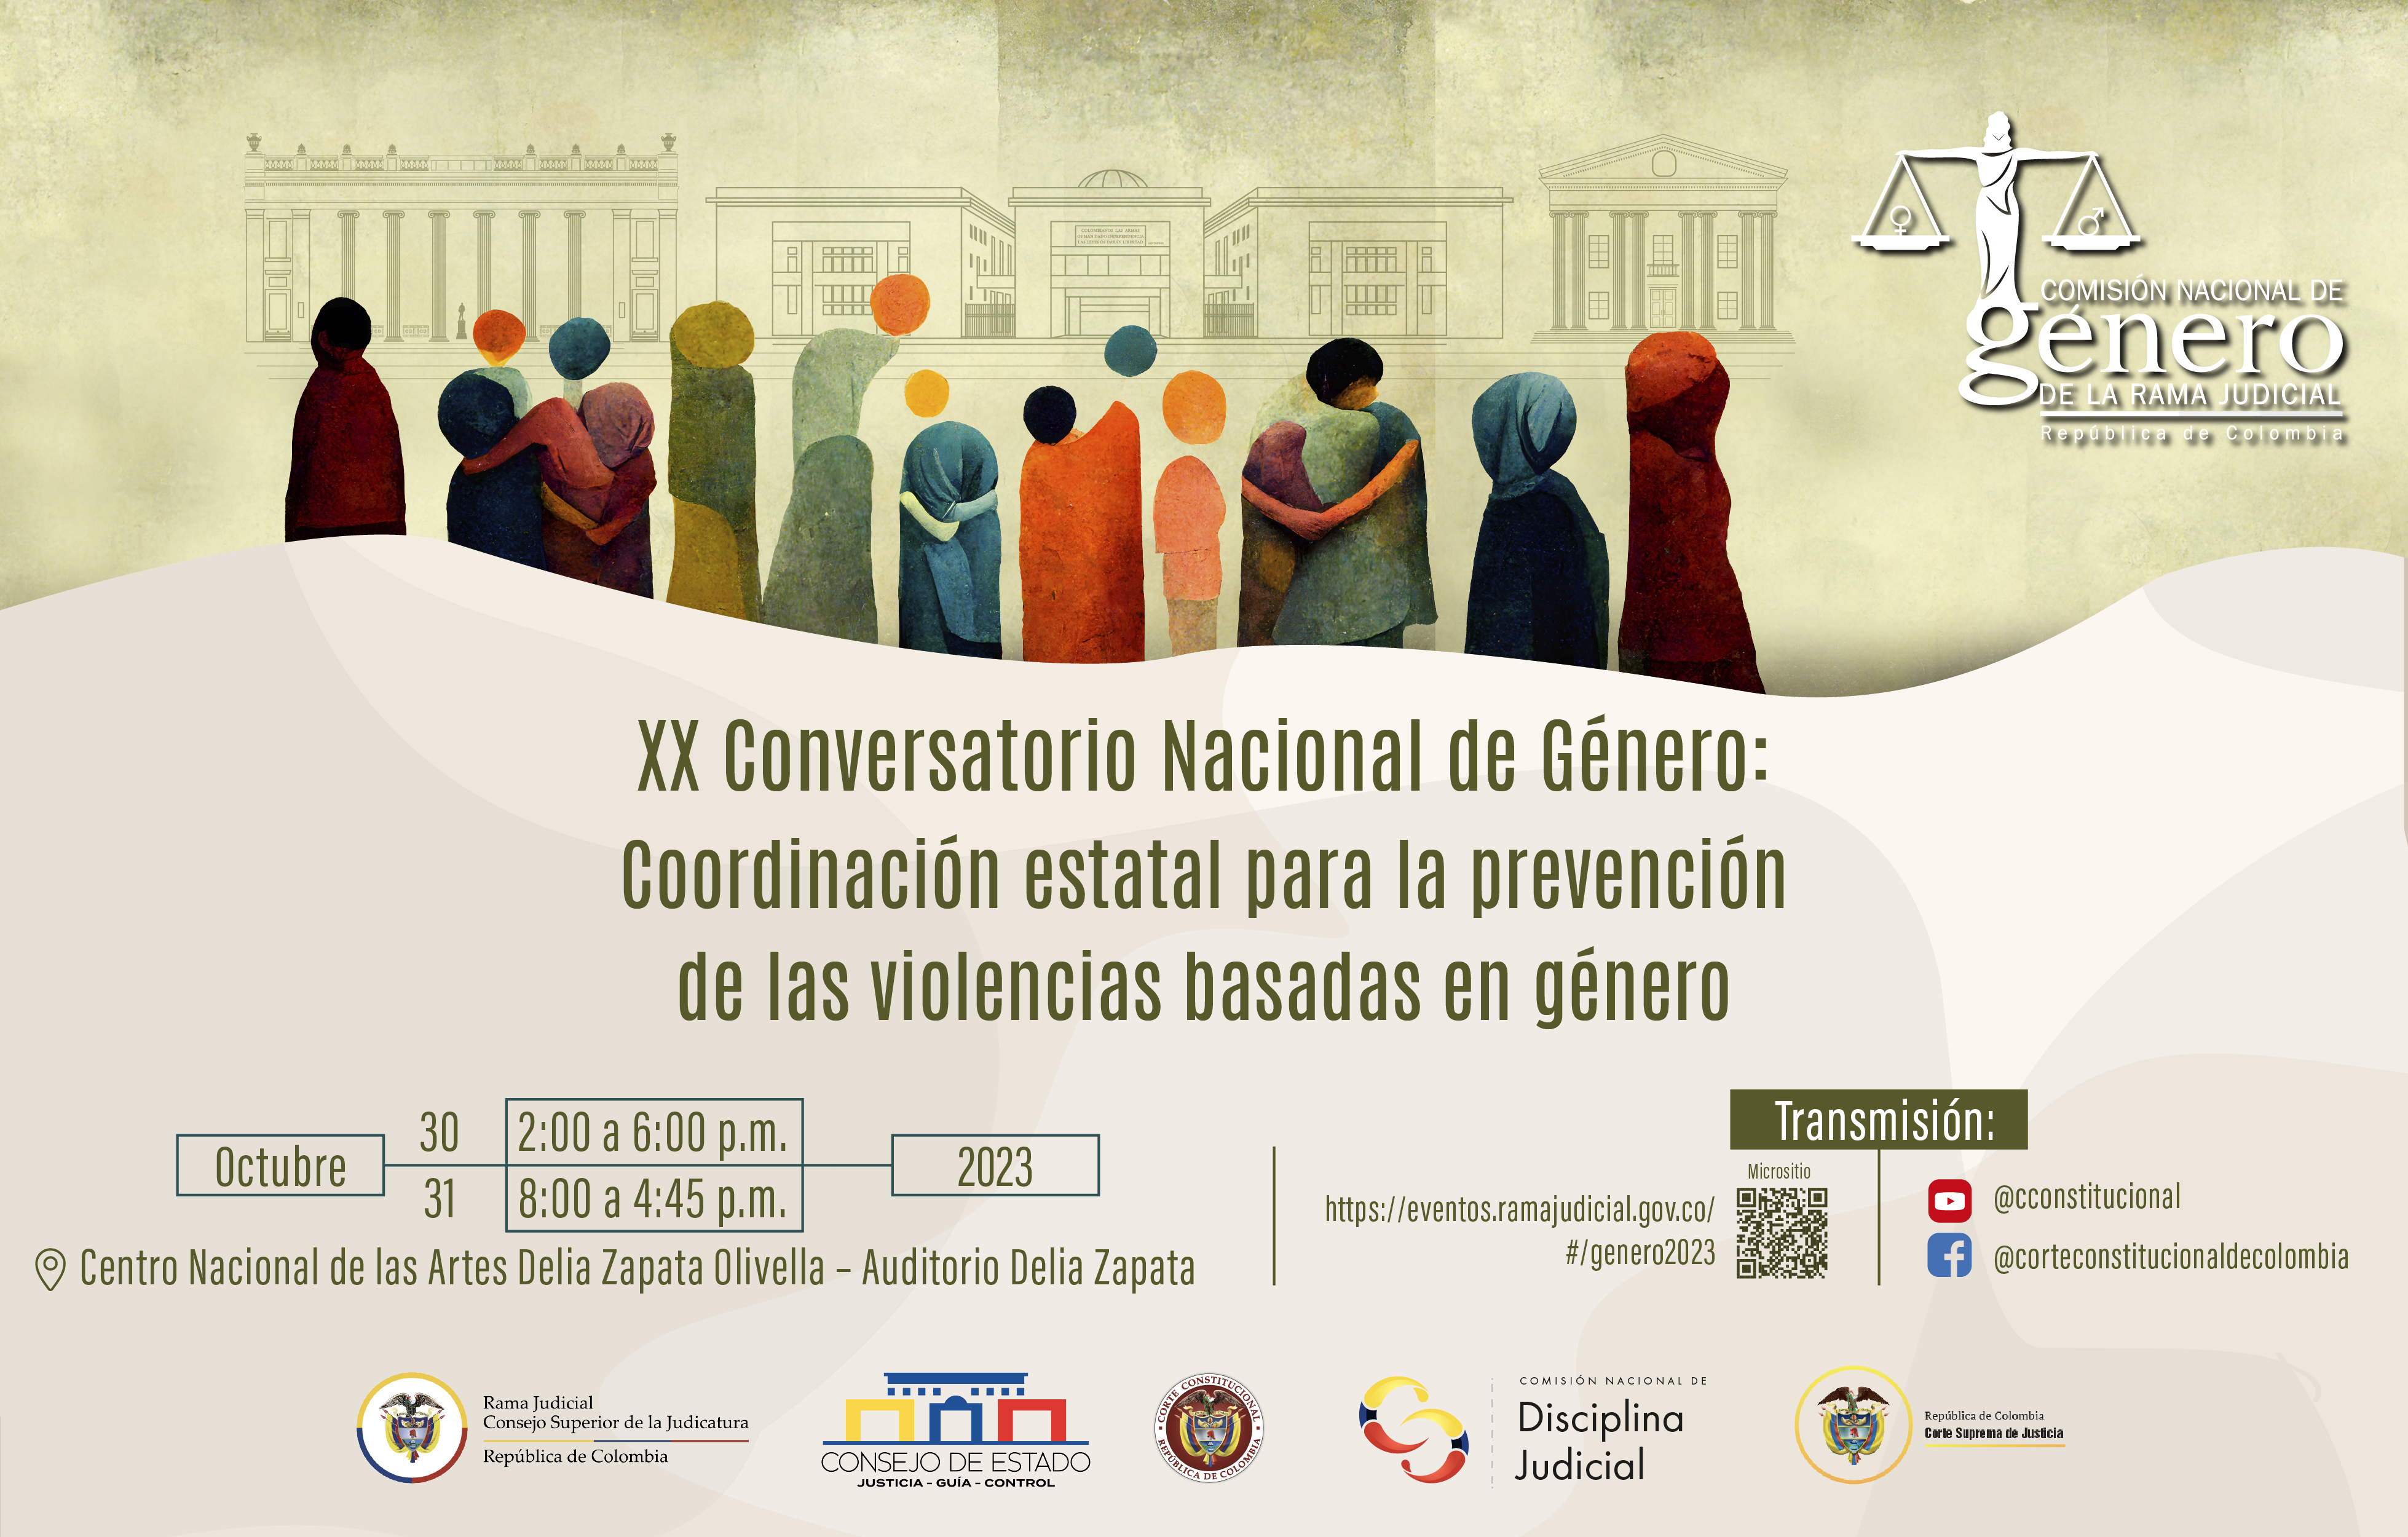 La coordinación estatal para prevenir las violencias de género, el tema que abordará el XX Conversatorio Nacional de Género